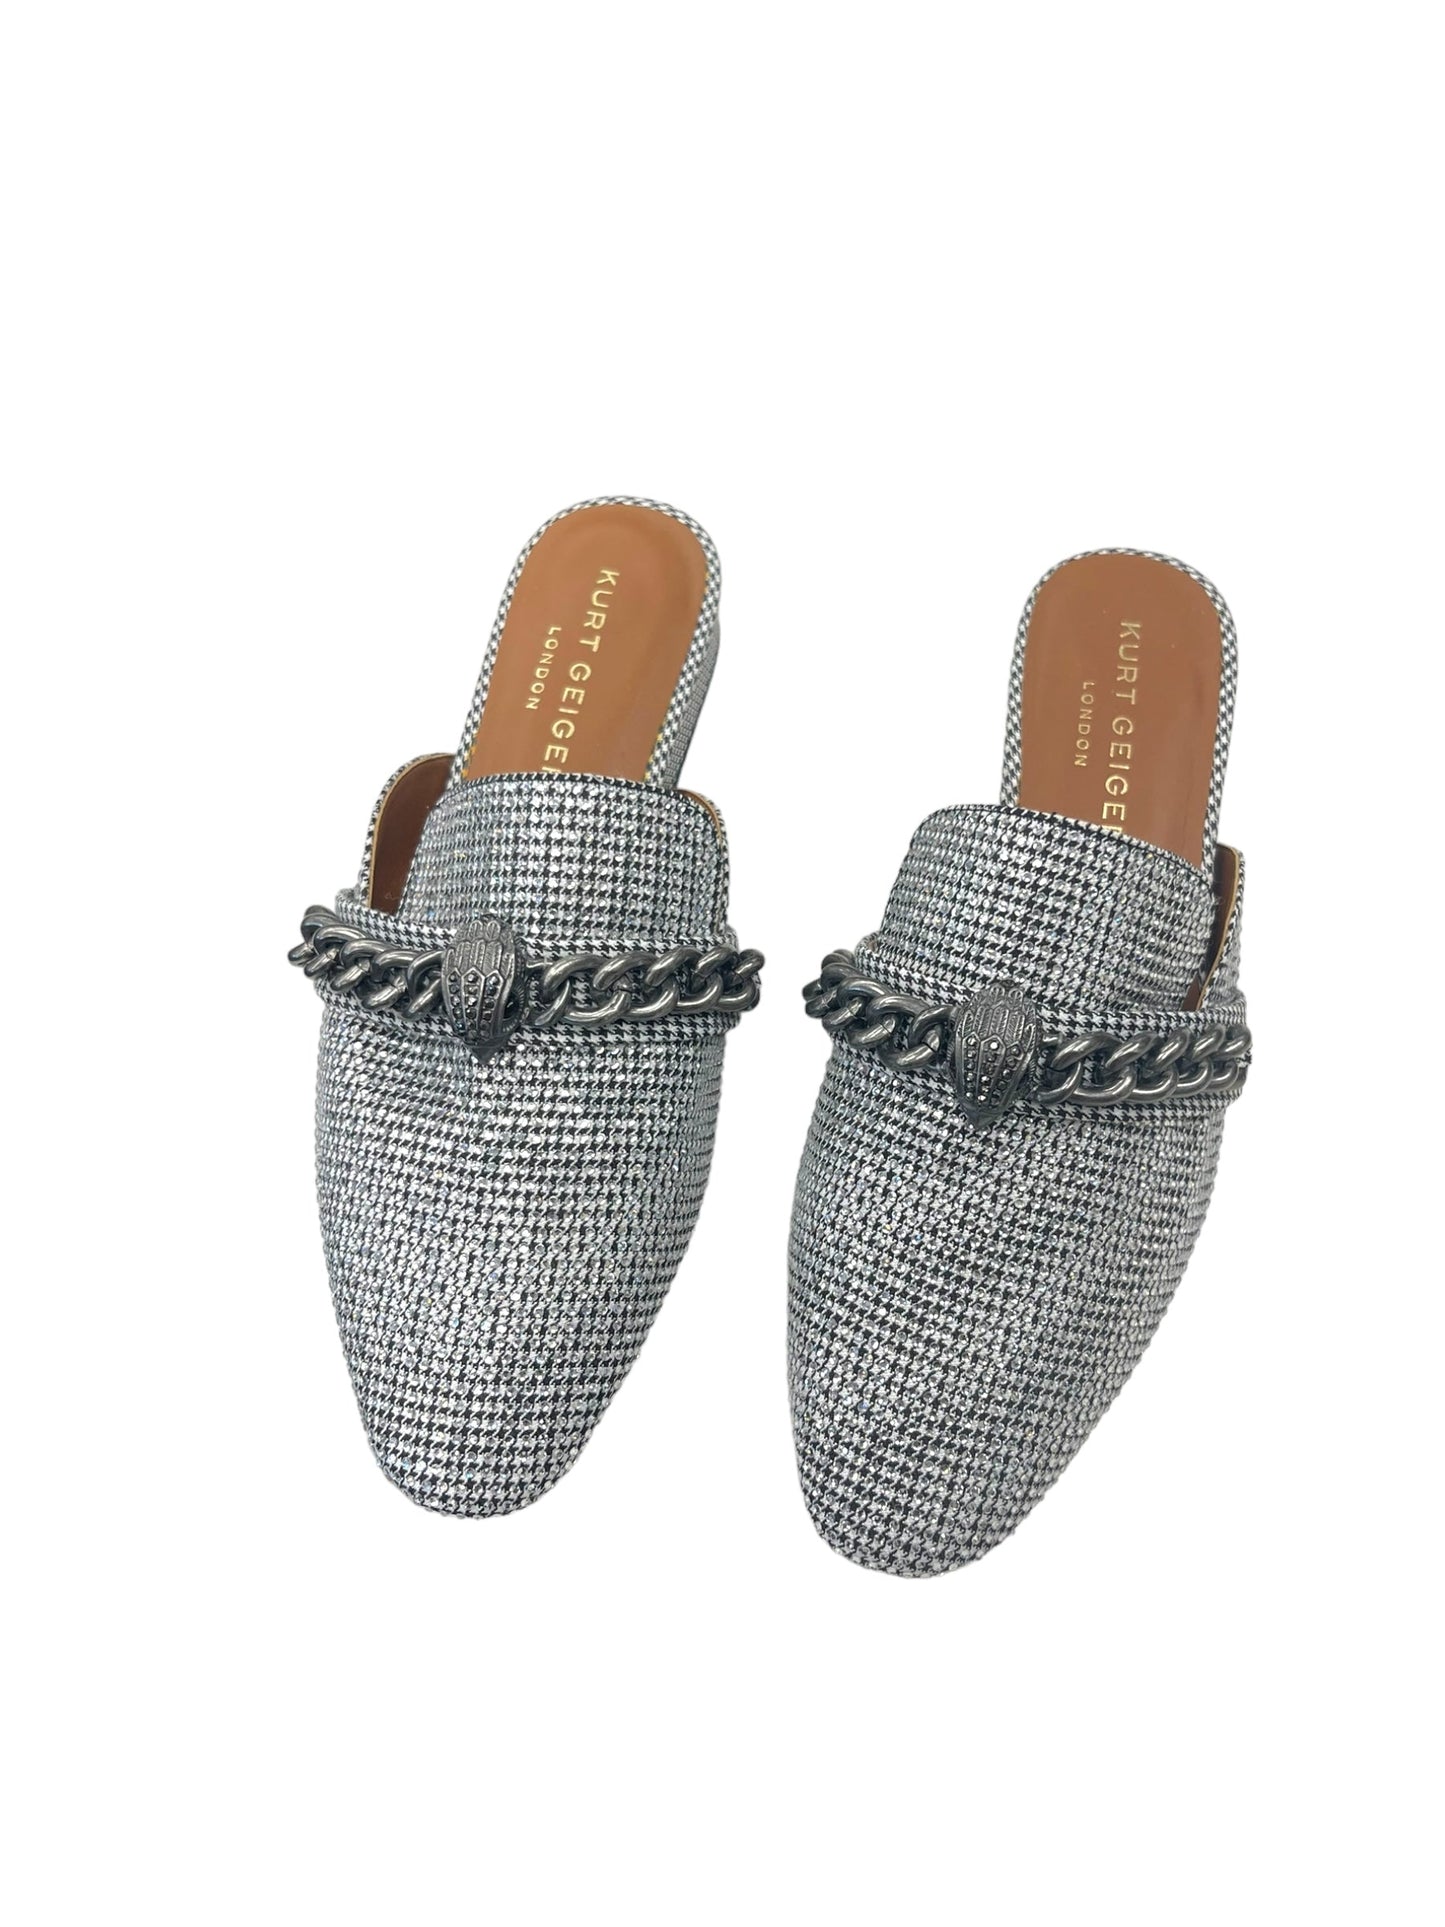 Silver Shoes Flats Kurt Geiger London, Size 8.5